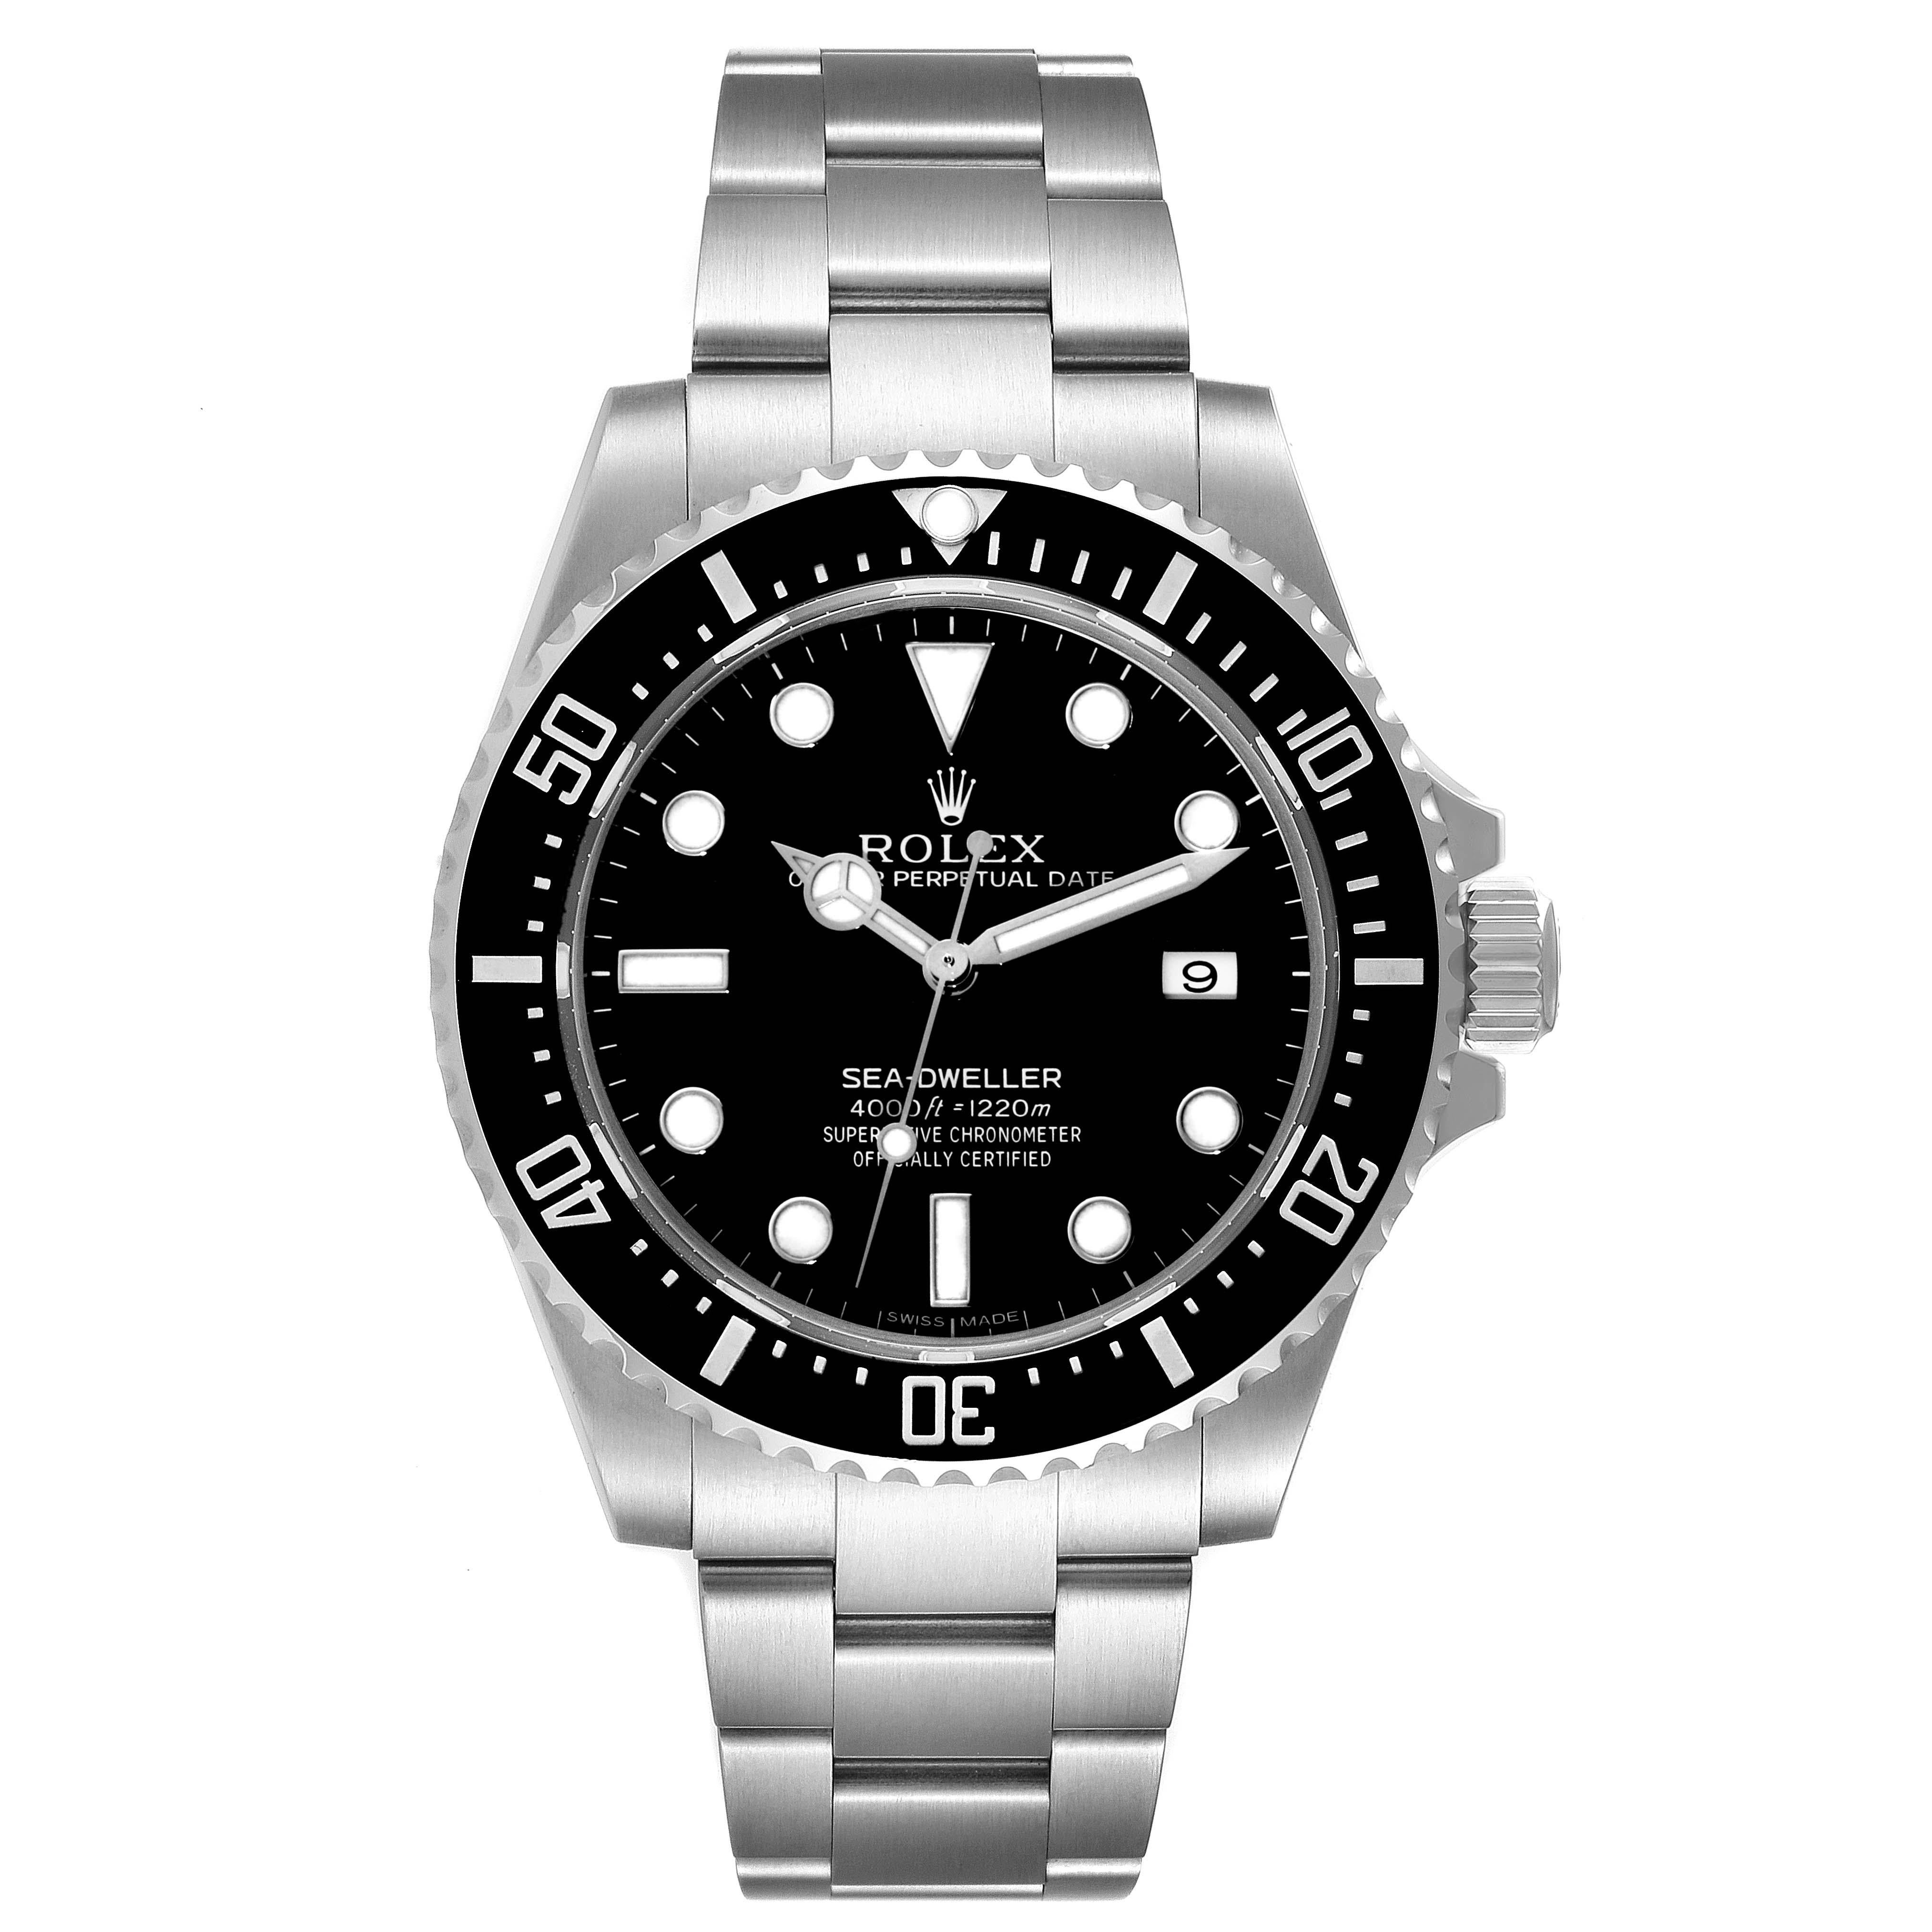 Rolex Seadweller 4000 Black Dial Automatic Steel Mens Watch 116600. Mouvement automatique à remontage automatique, officiellement certifié chronomètre. Boîtier oyster en acier inoxydable de 40.0 mm de diamètre. Logo Rolex sur une couronne. Lunette